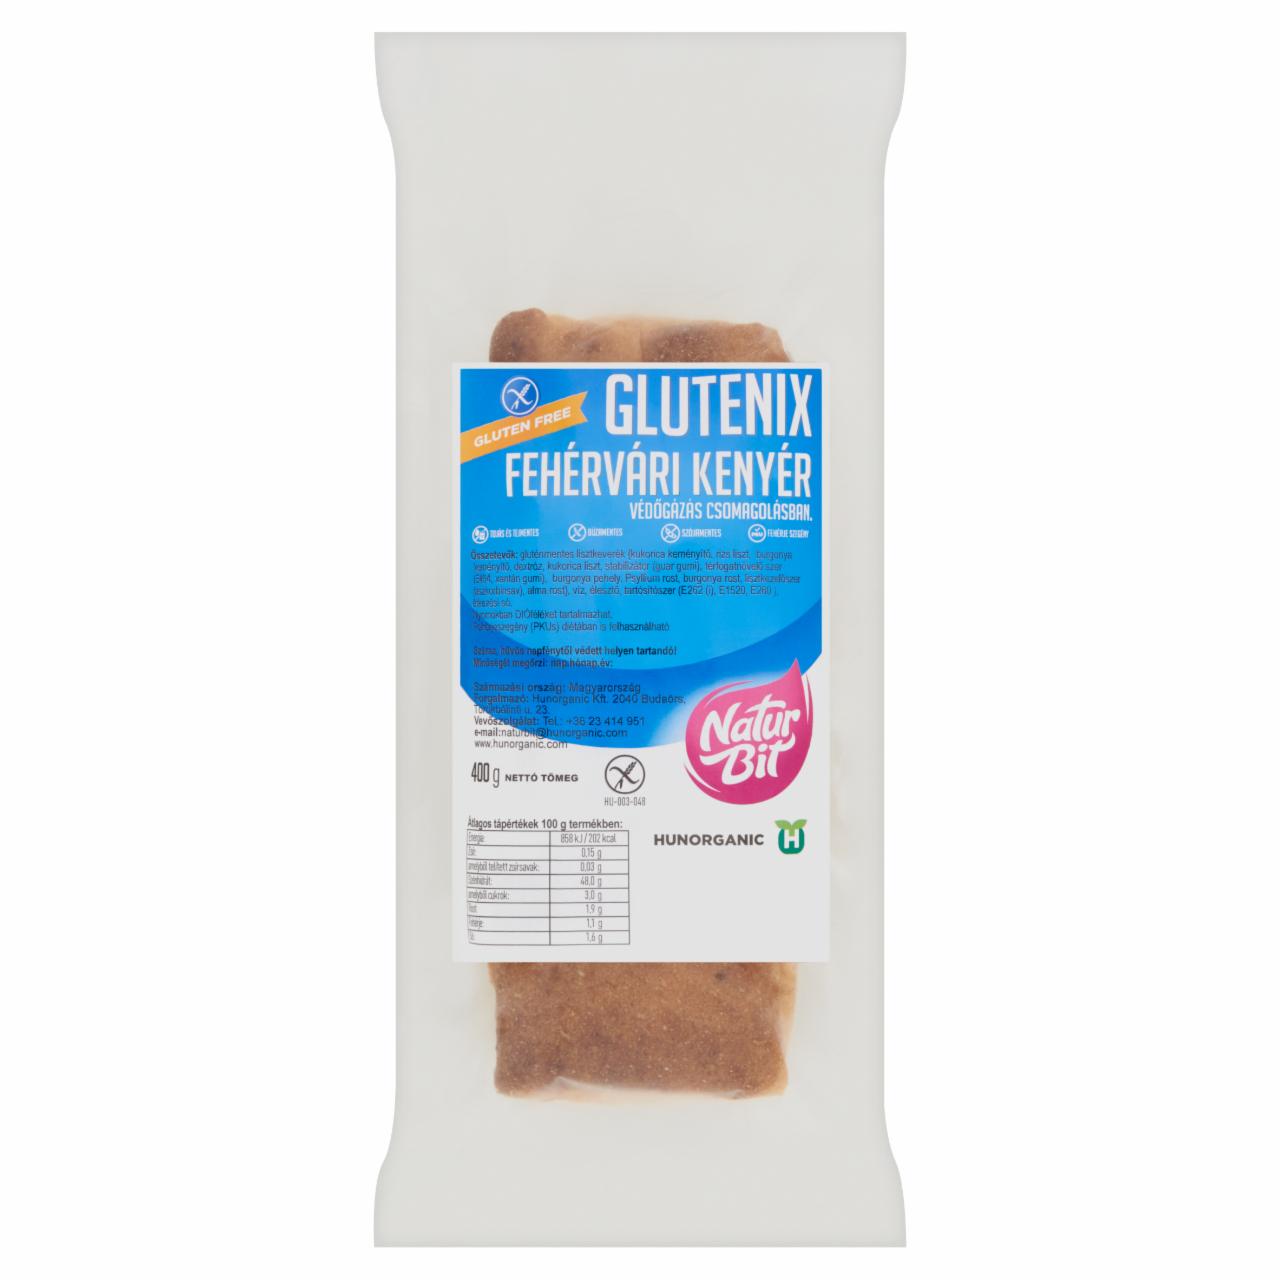 Képek - Naturbit Glutenix fehérvári kenyér 400 g